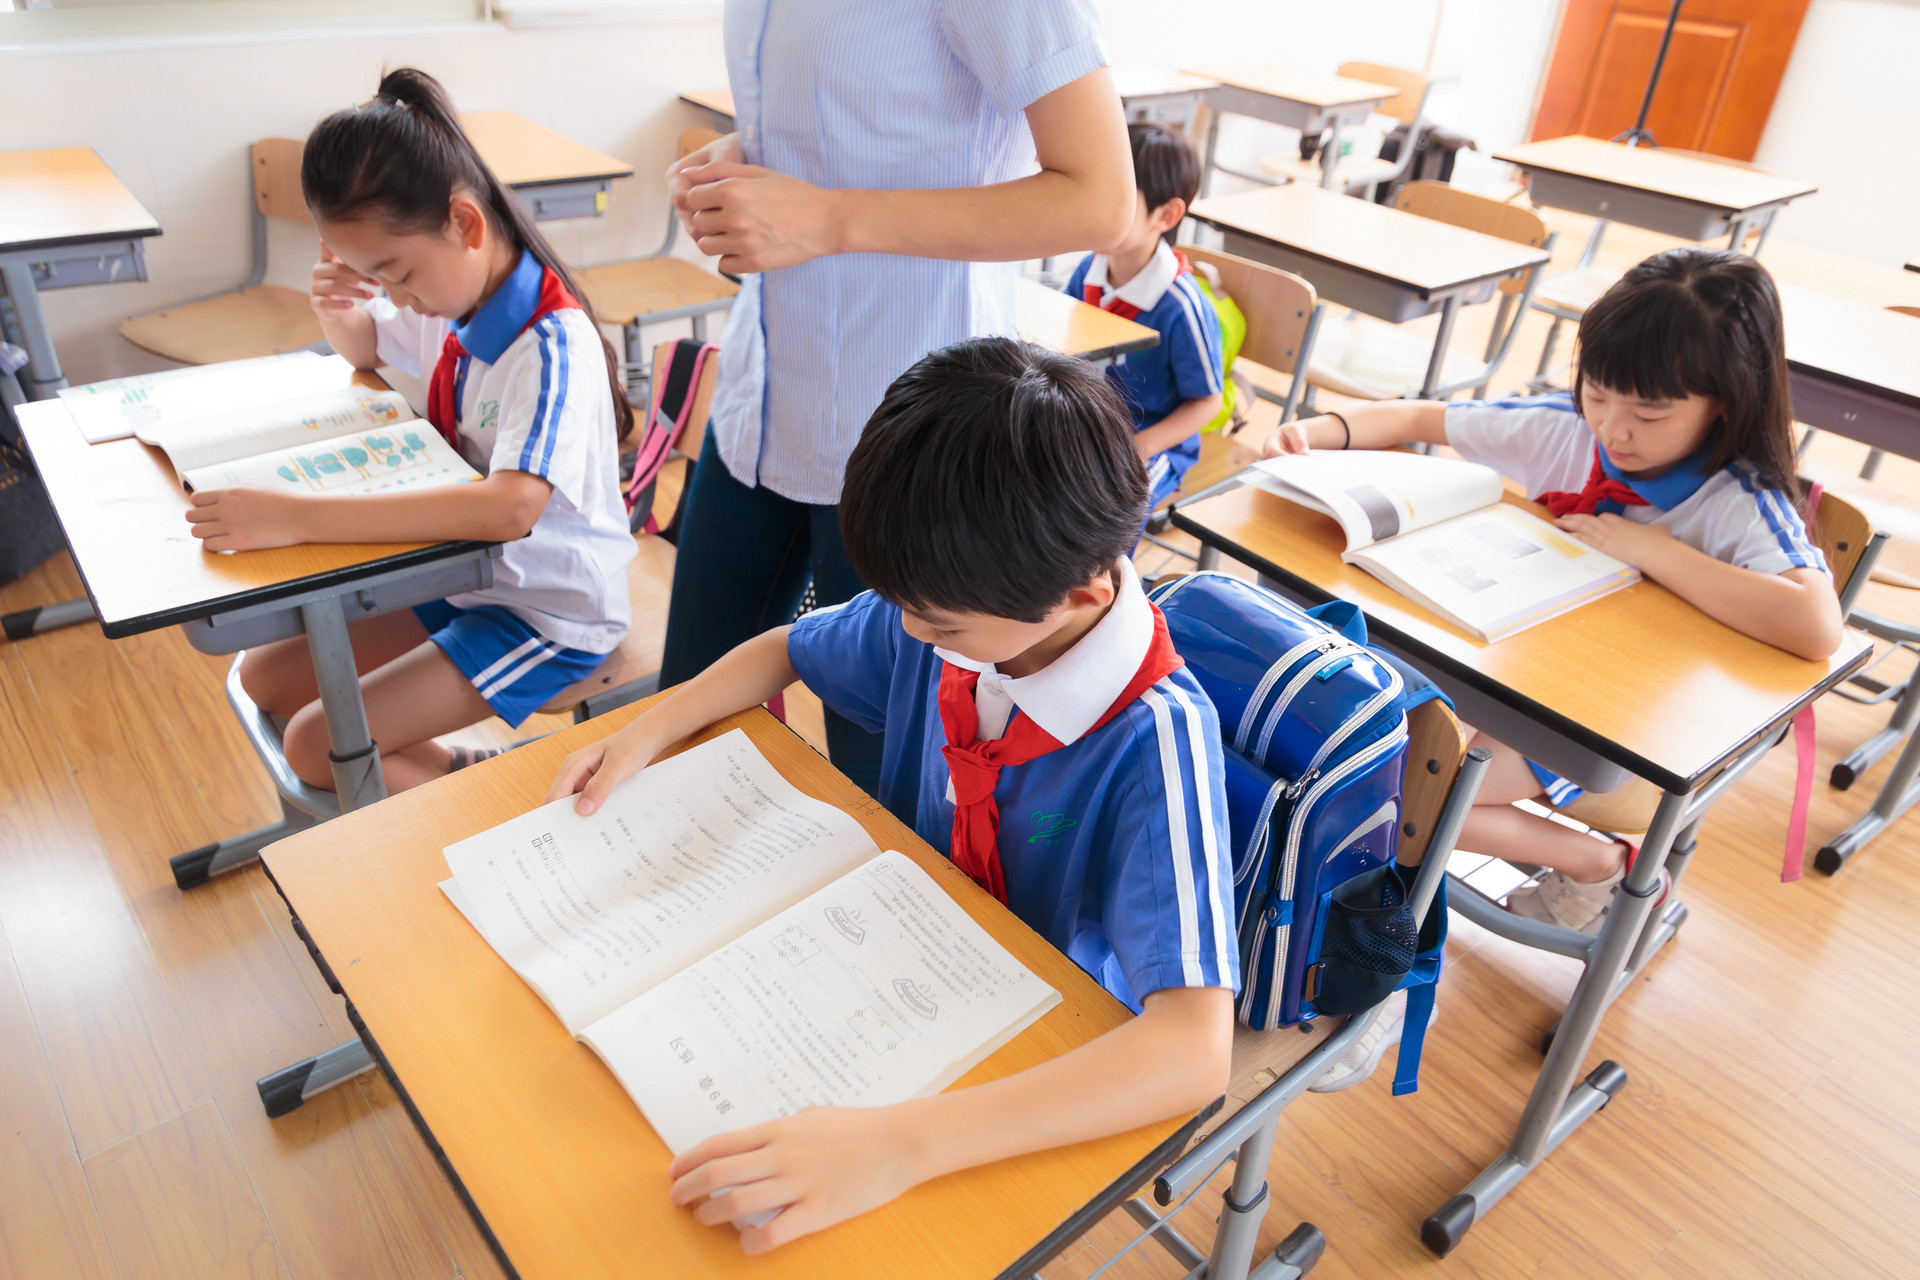 每学期至少6个课时 青岛中小学幼儿园将开展生存教育